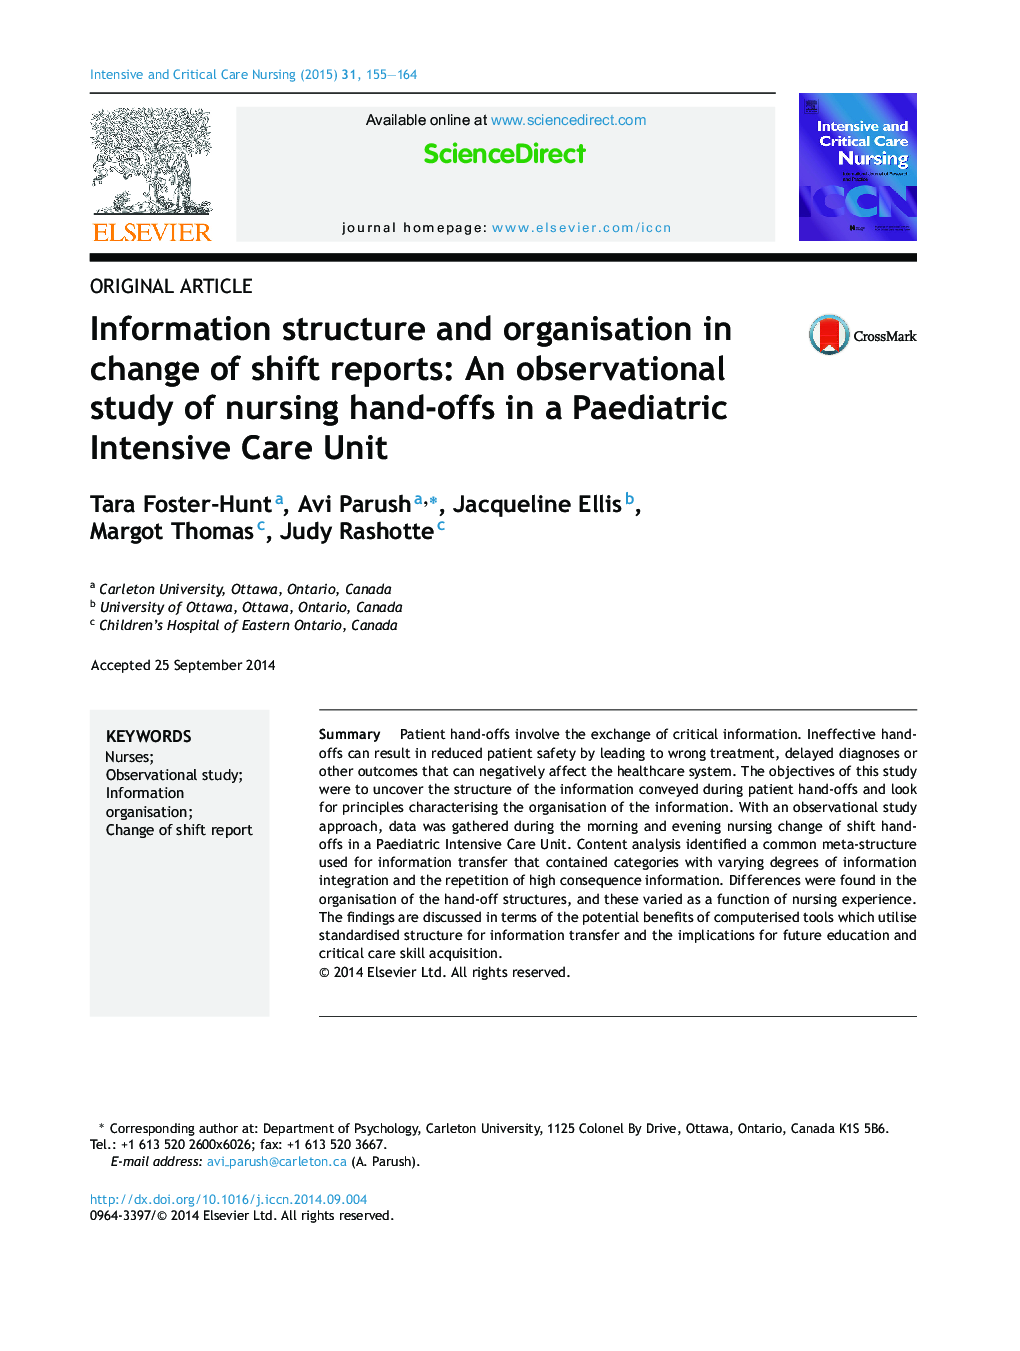 ساختار و سازمان اطلاعات در تغییر گزارش های تغییر: یک مطالعه مشاهده ای از دست اندرکاران پرستاری در واحد مراقبت های ویژه کودکان